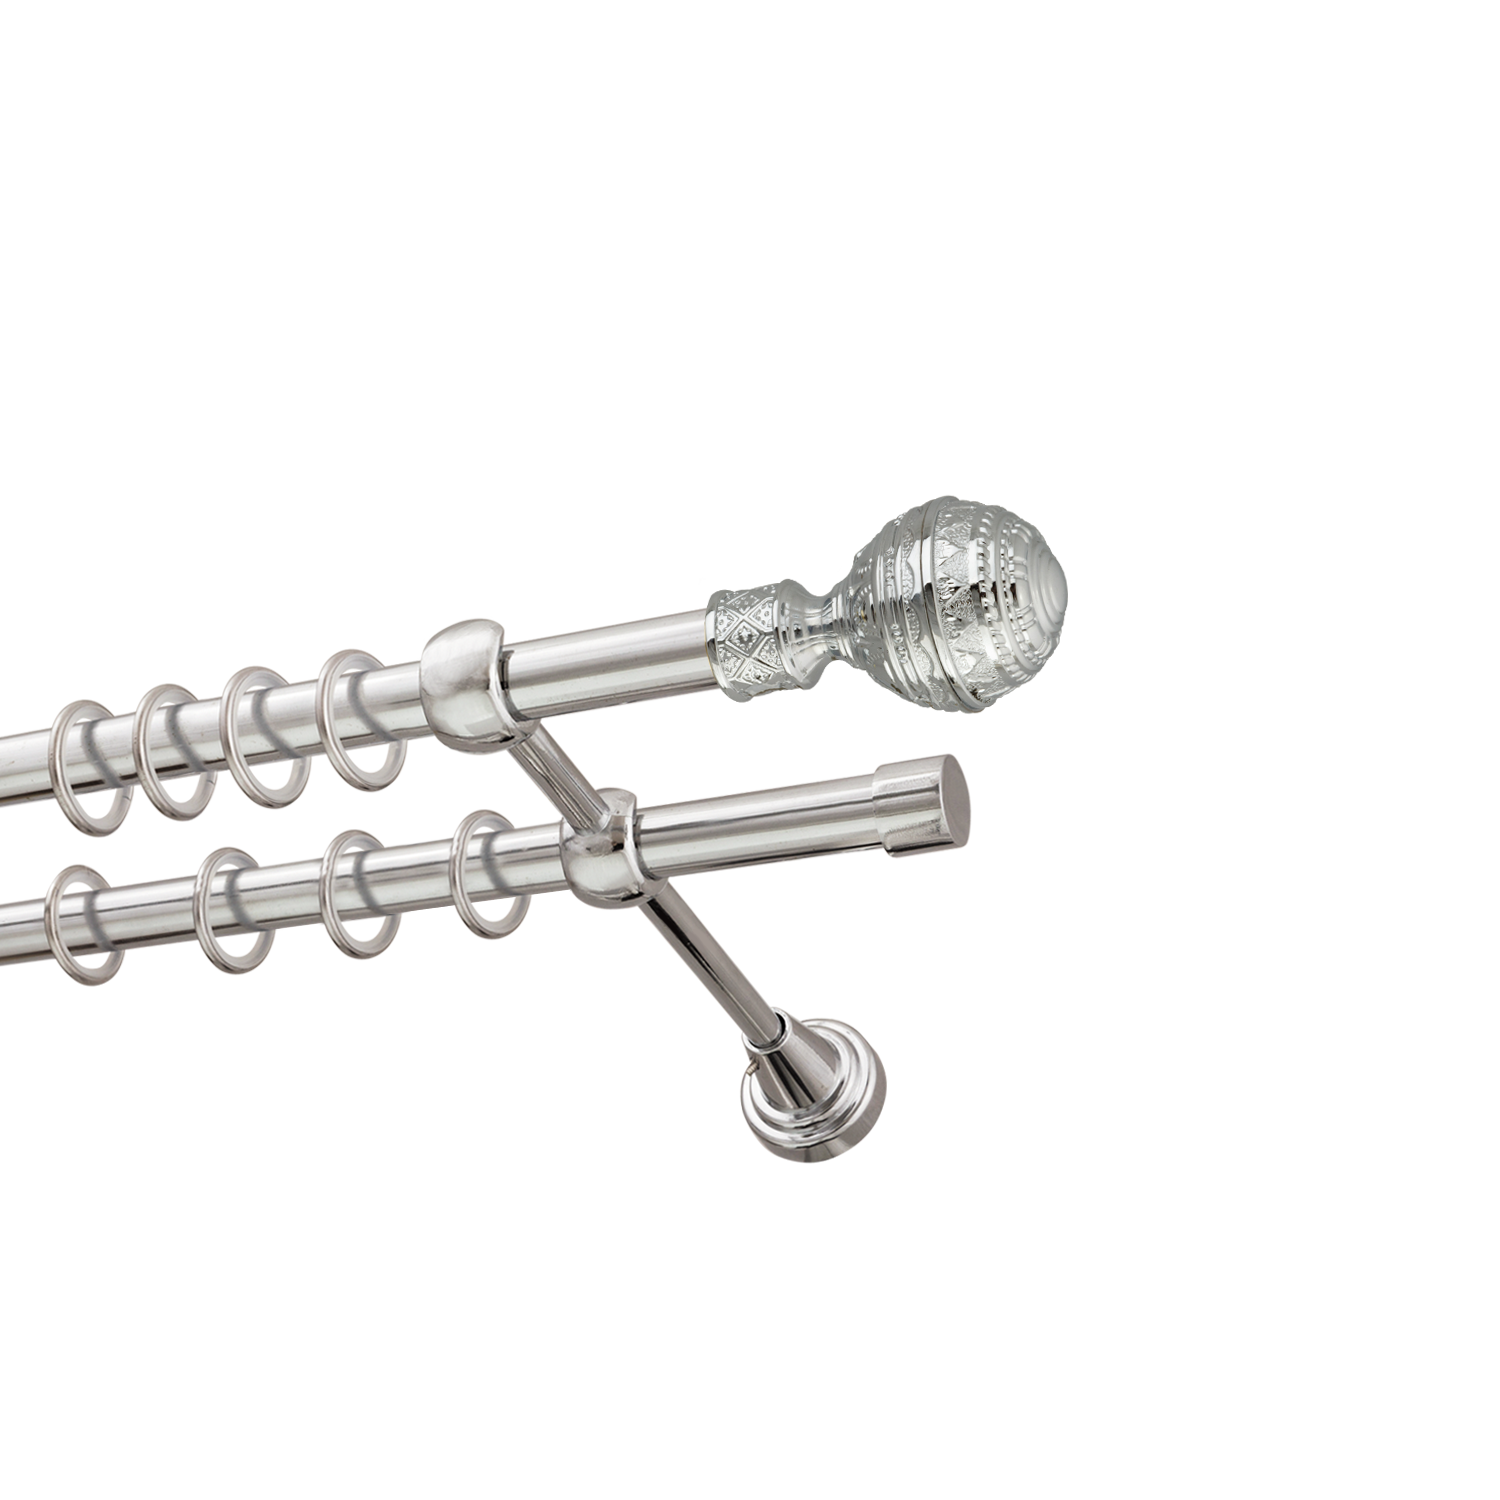 Металлический карниз для штор Роял, двухрядный 16/16 мм, серебро, гладкая штанга, длина 140 см - фото Wikidecor.ru